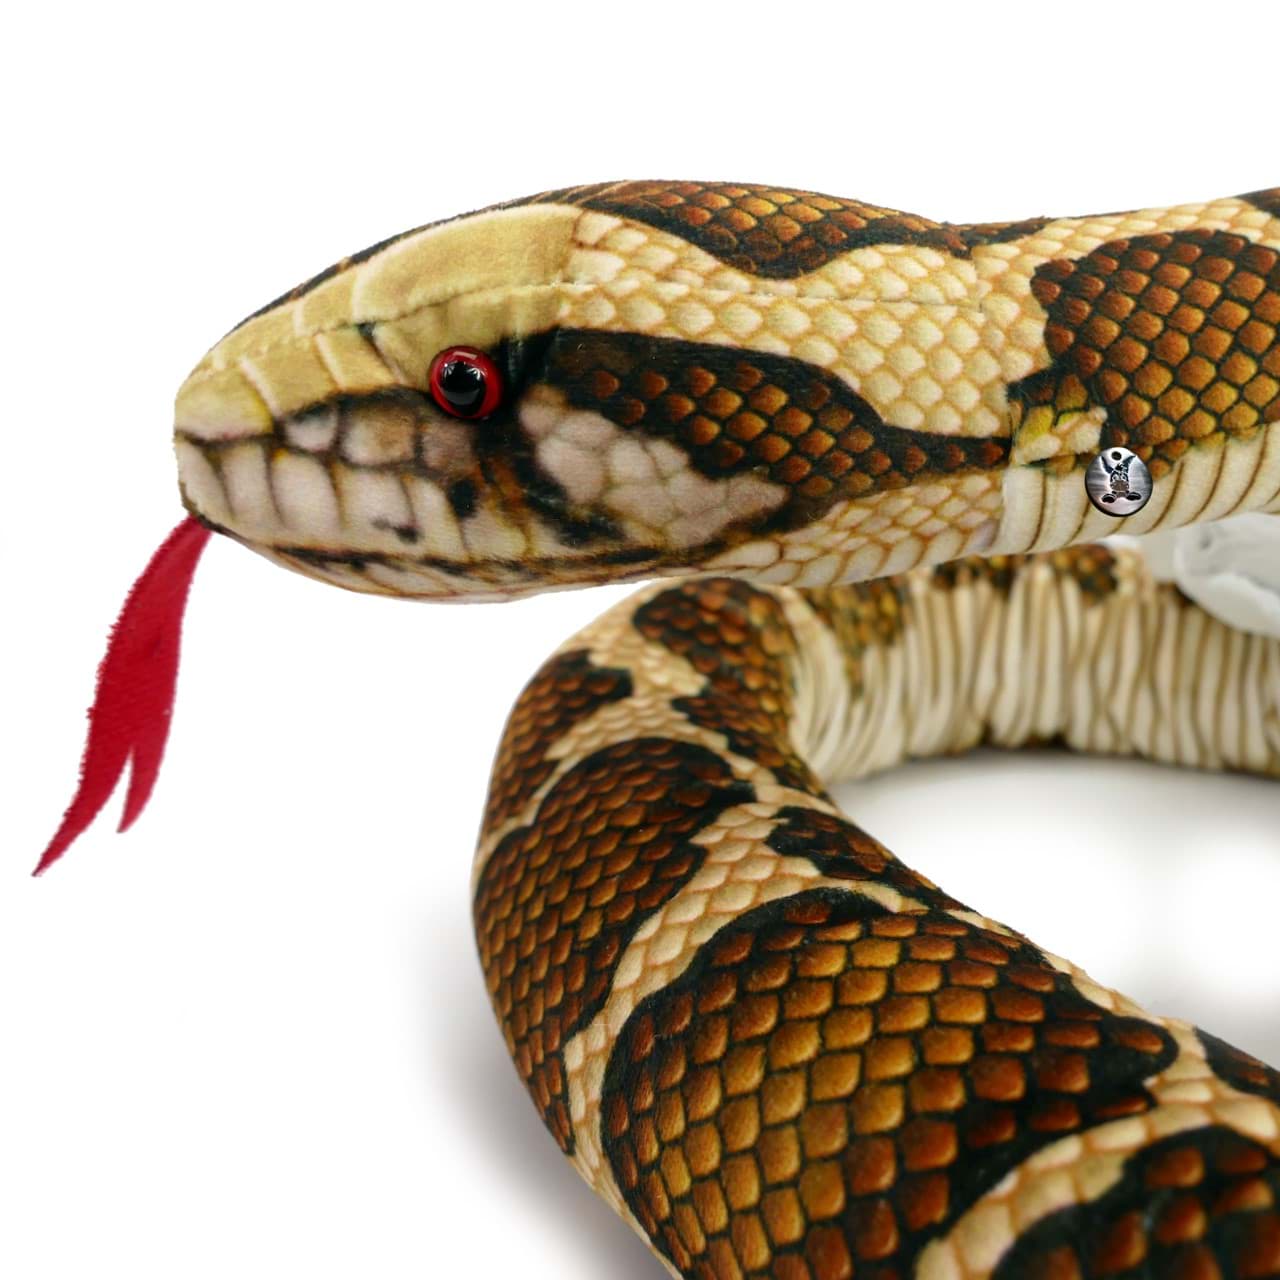 Bild für Kategorie Schlangen